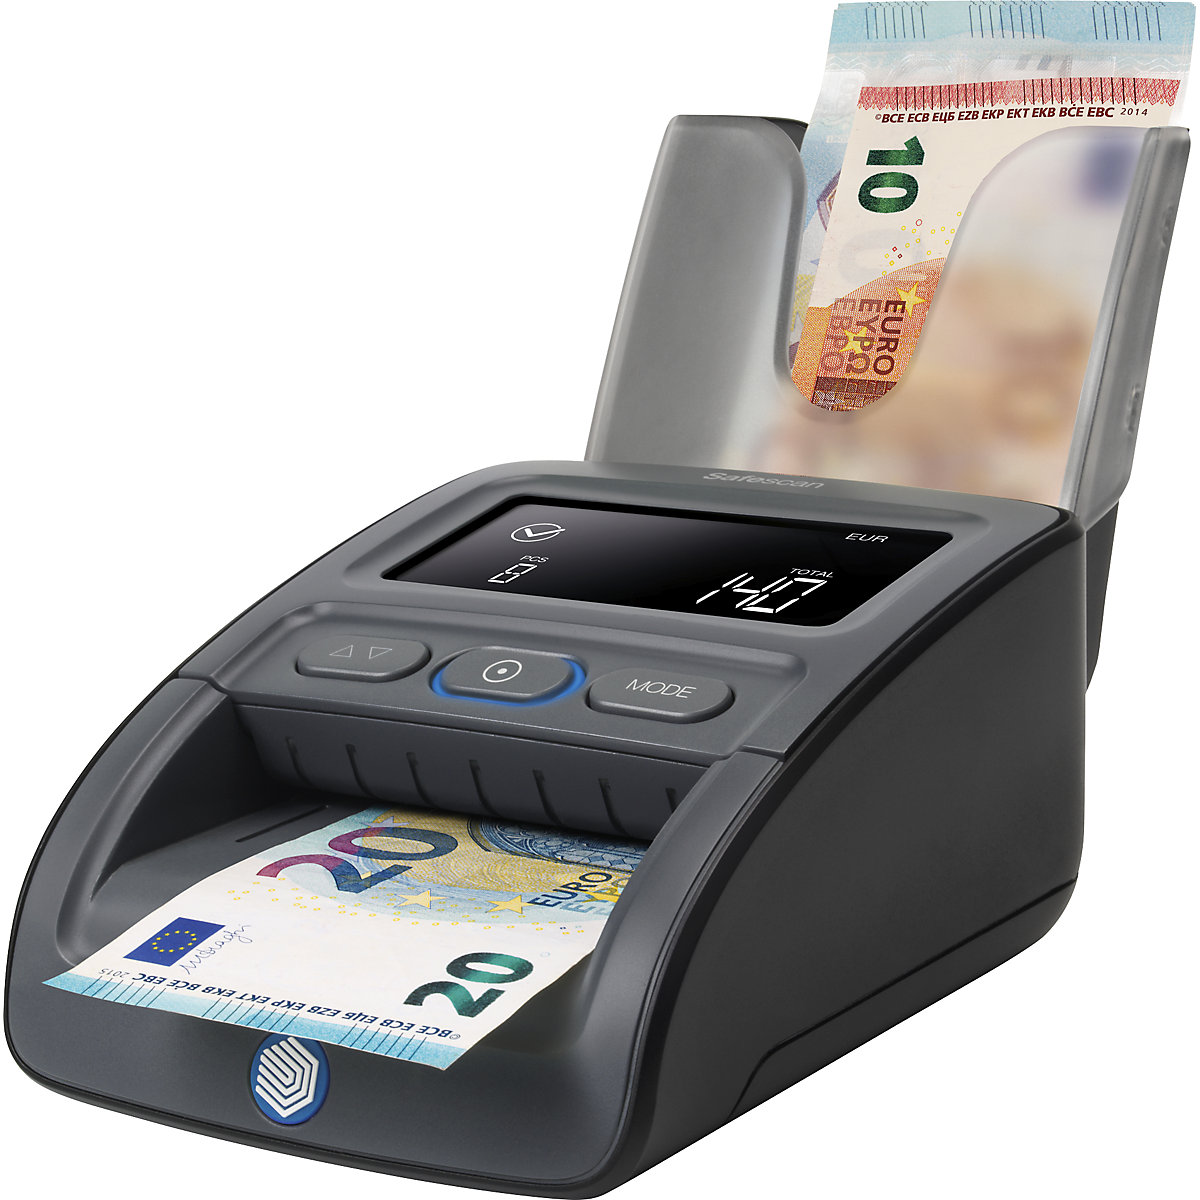 Detector de billetes falsos – Safescan (Imagen del producto 18)-17